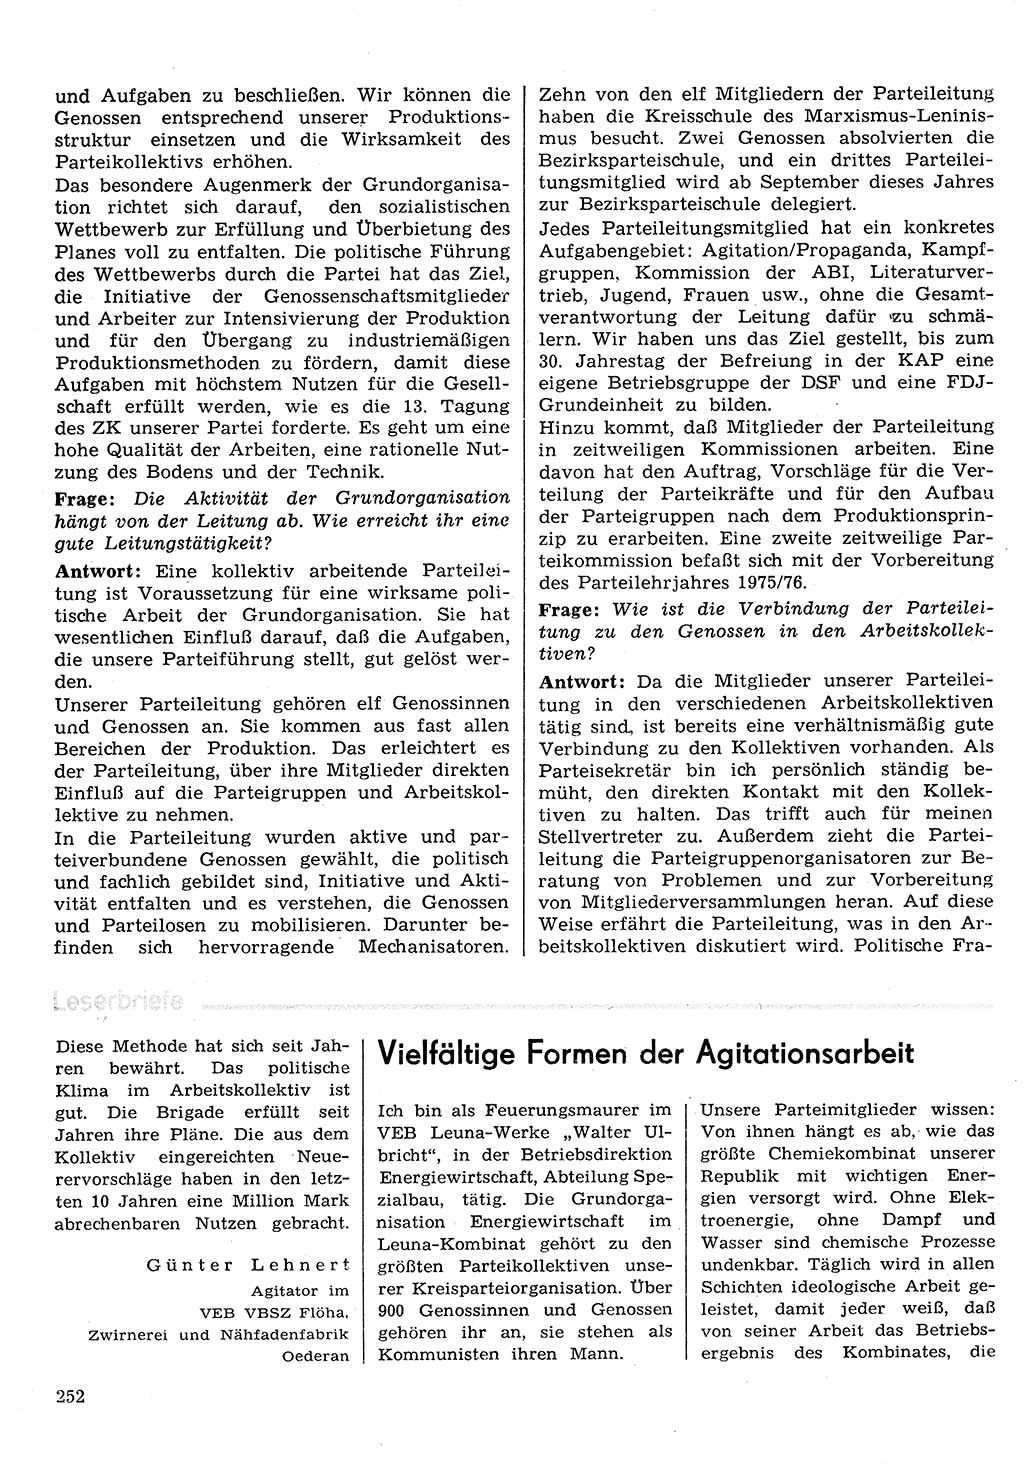 Neuer Weg (NW), Organ des Zentralkomitees (ZK) der SED (Sozialistische Einheitspartei Deutschlands) für Fragen des Parteilebens, 30. Jahrgang [Deutsche Demokratische Republik (DDR)] 1975, Seite 252 (NW ZK SED DDR 1975, S. 252)